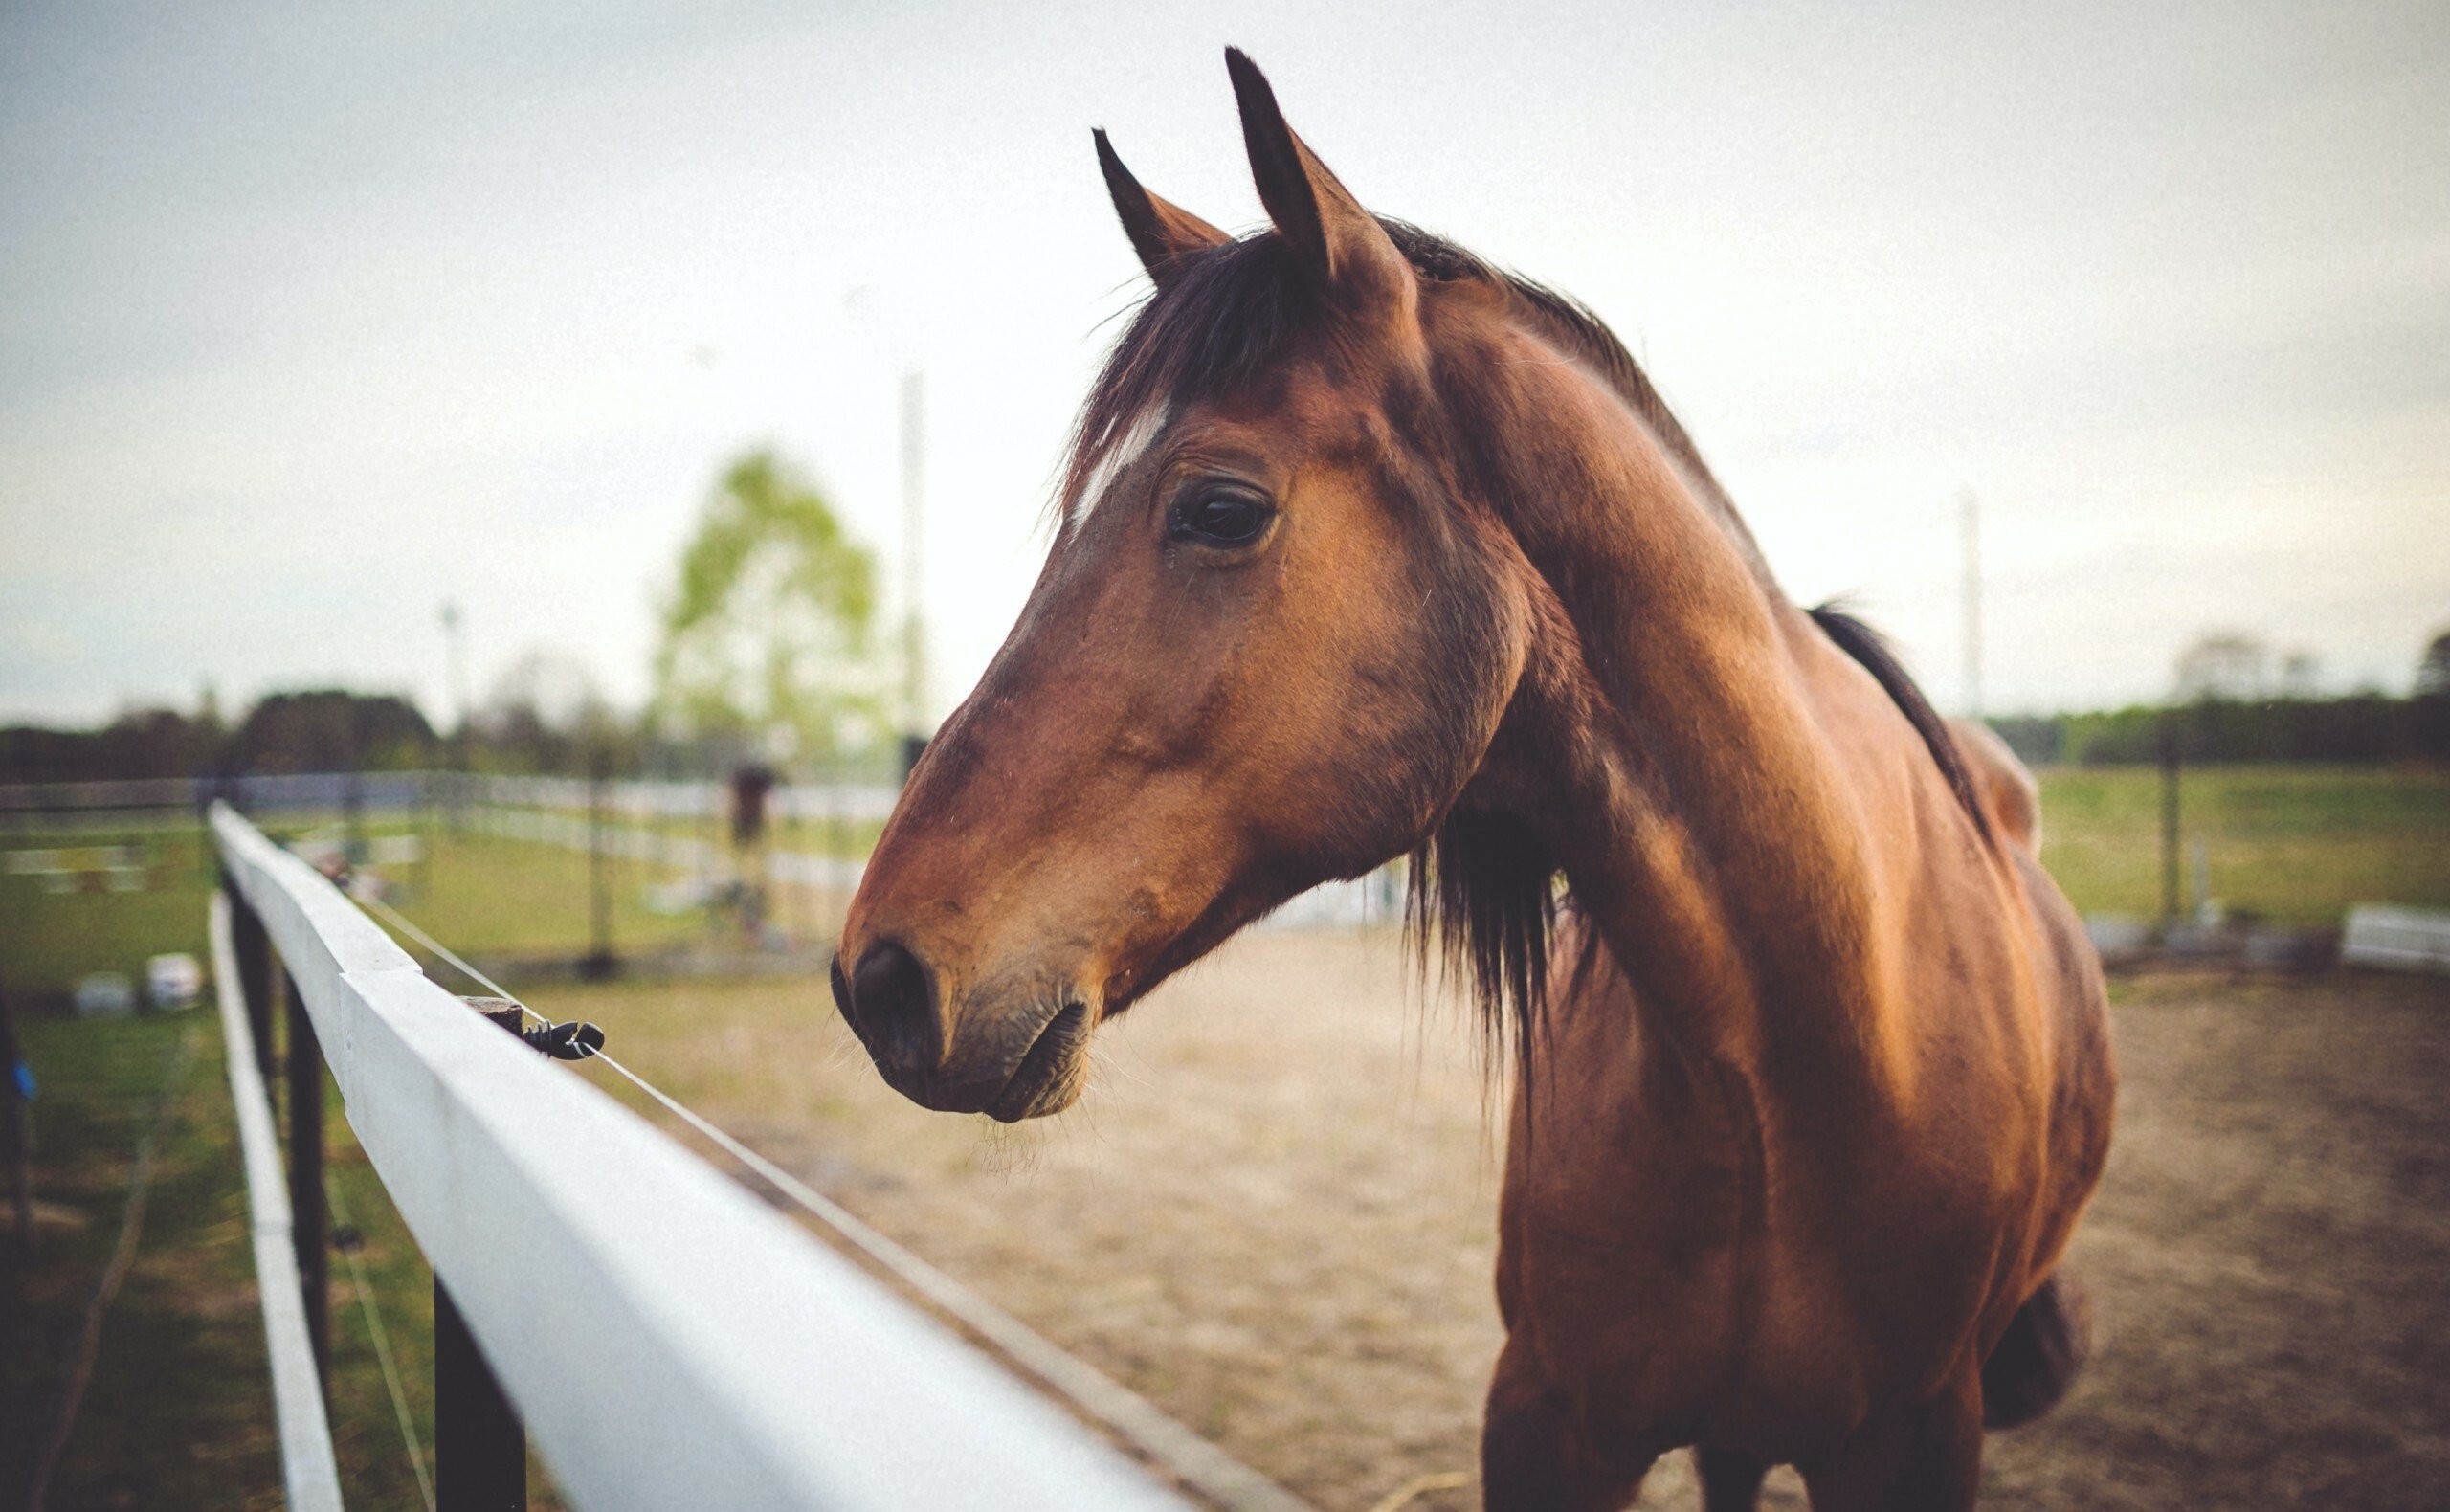 Pferdehaftpflichtversicherung
ab 68,78€ im Jahr